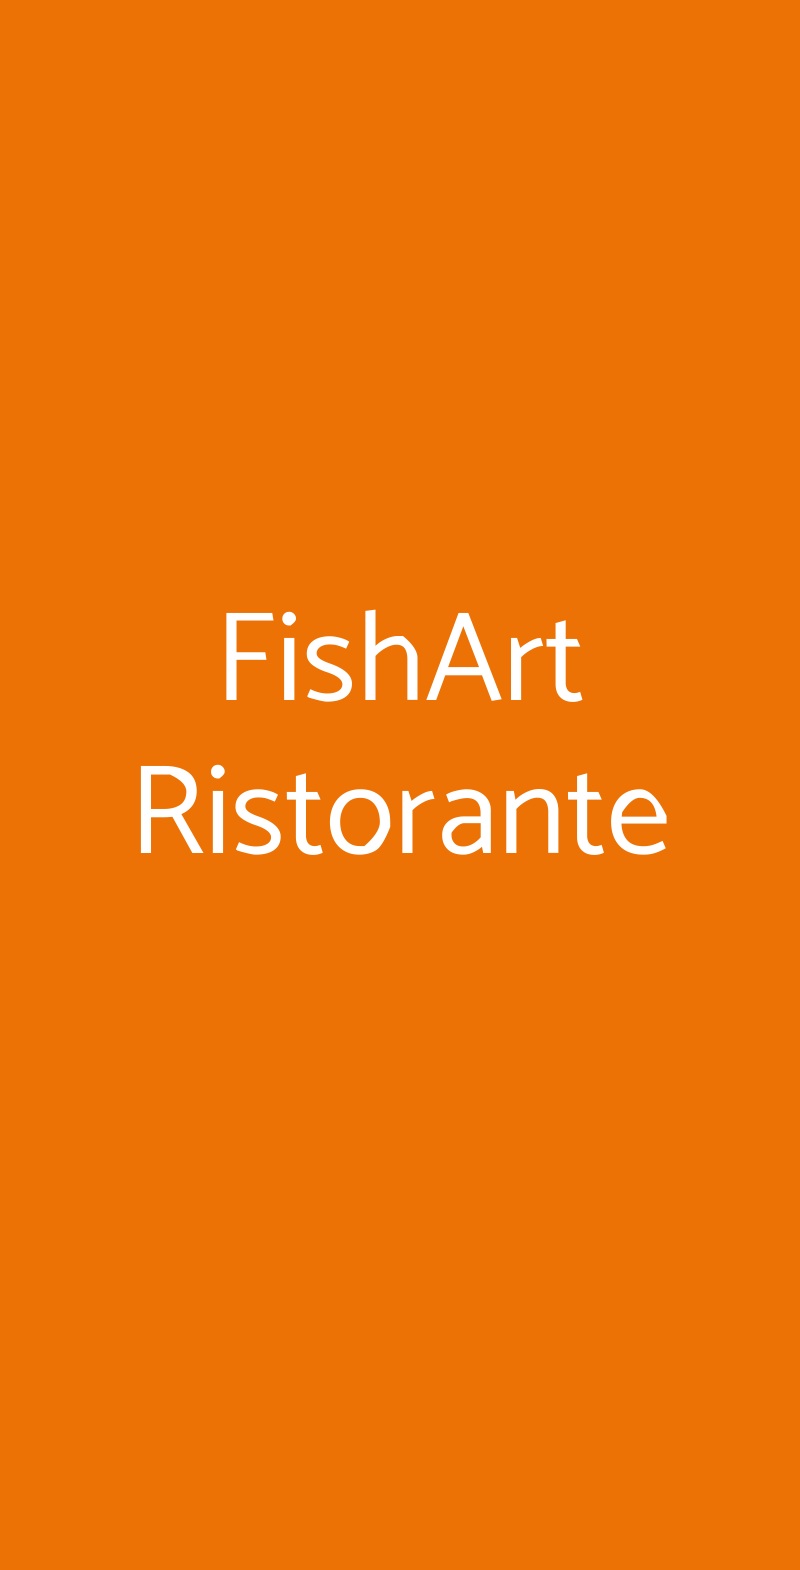 FishArt Ristorante Salerno menù 1 pagina